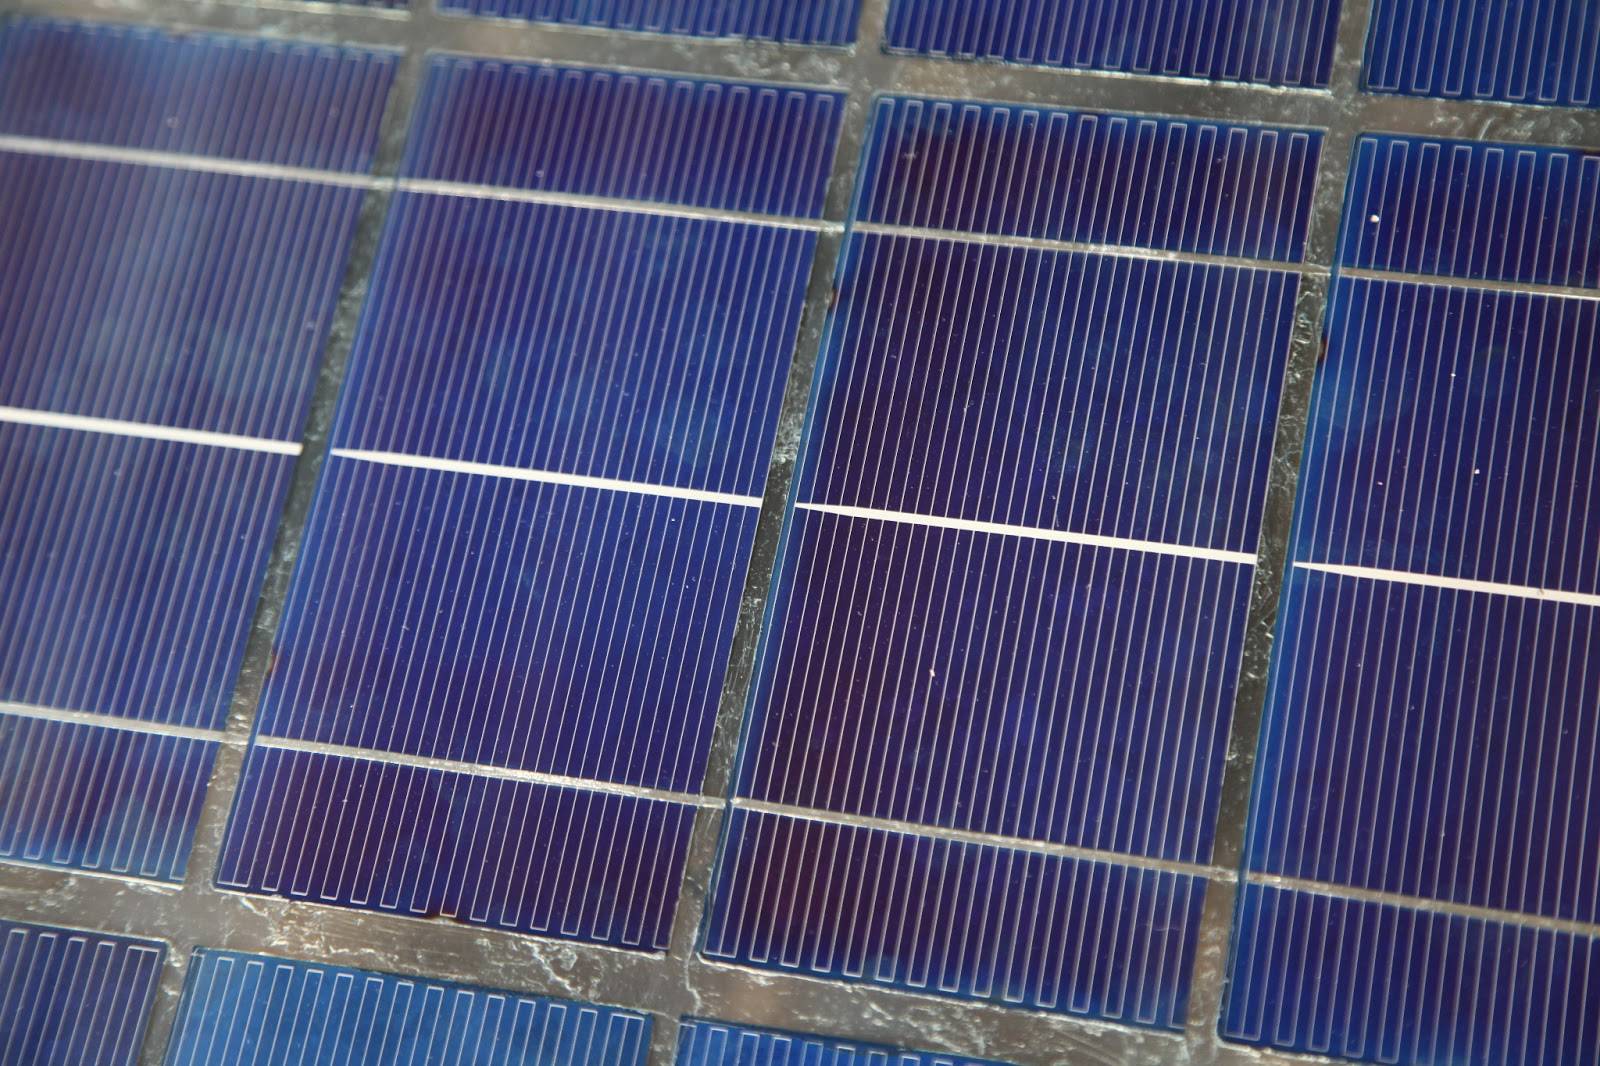 Дешёвая энергия: солнечная батарея своими руками